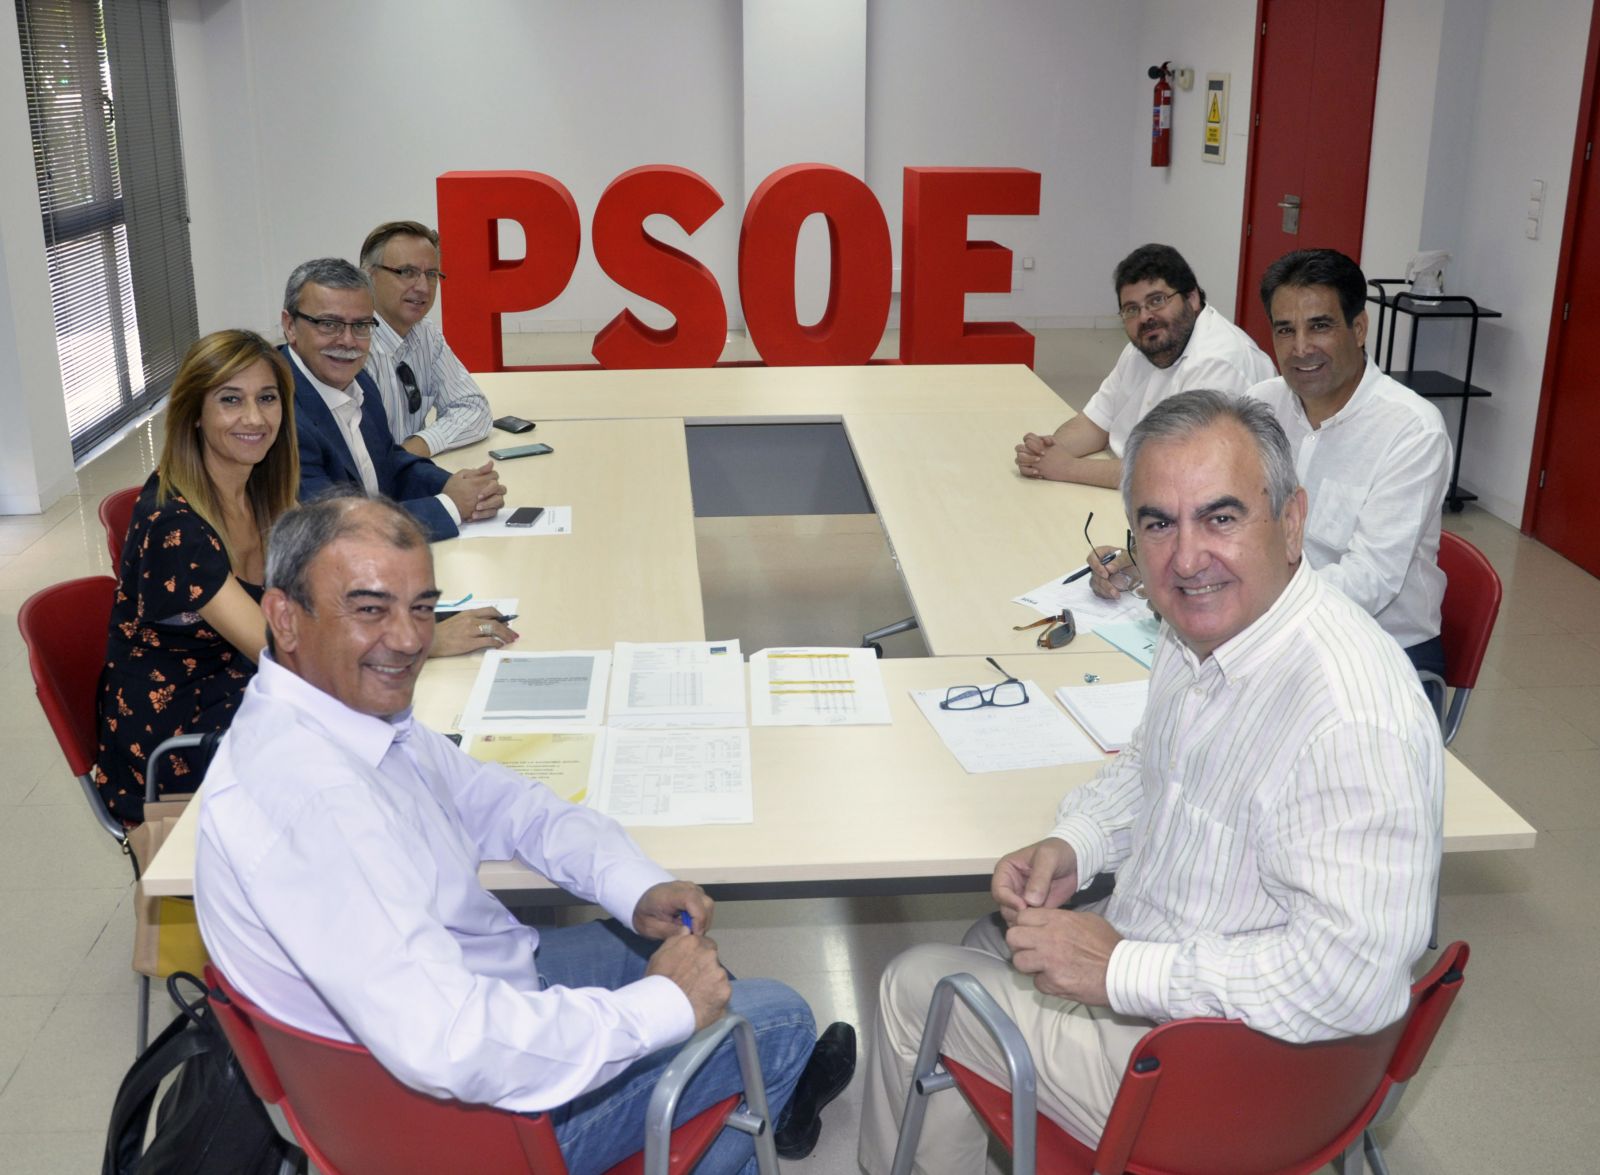 PSOE UCOMUR 1 - Ucomur